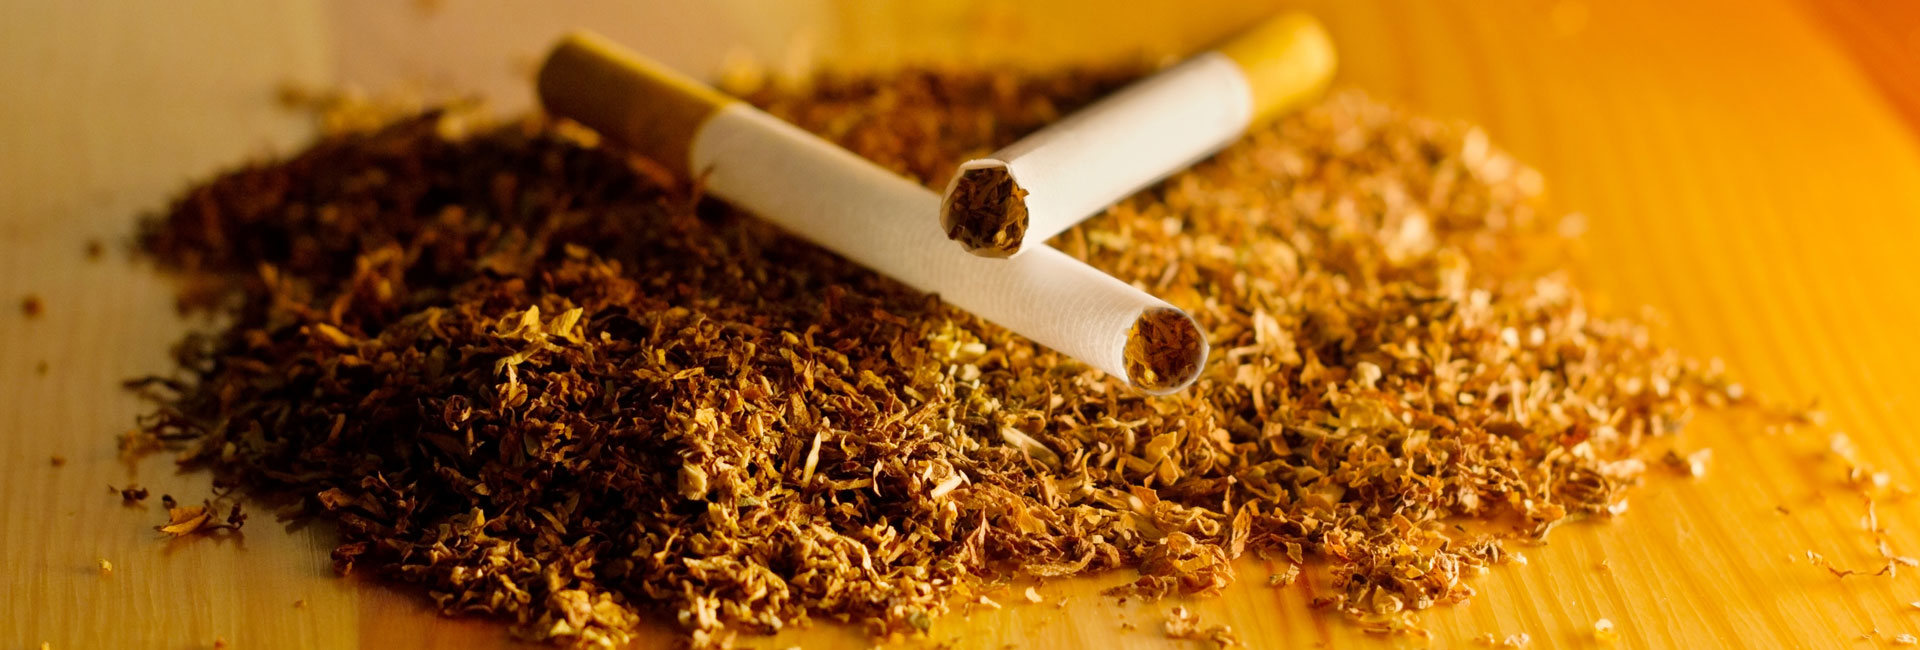 Tobacco and Cigarettes